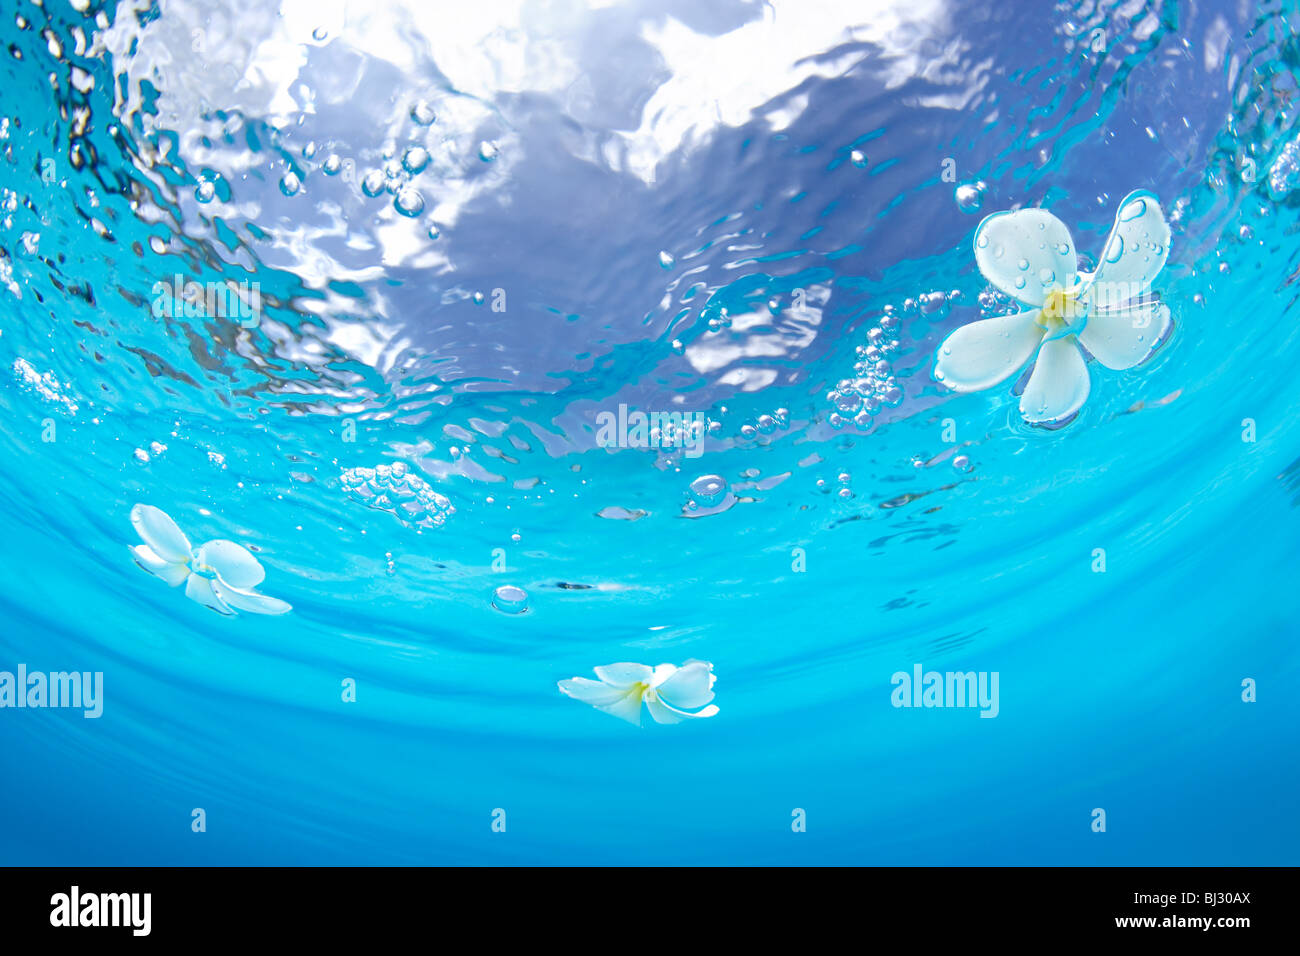 Plumerias flotando sobre el agua Foto de stock